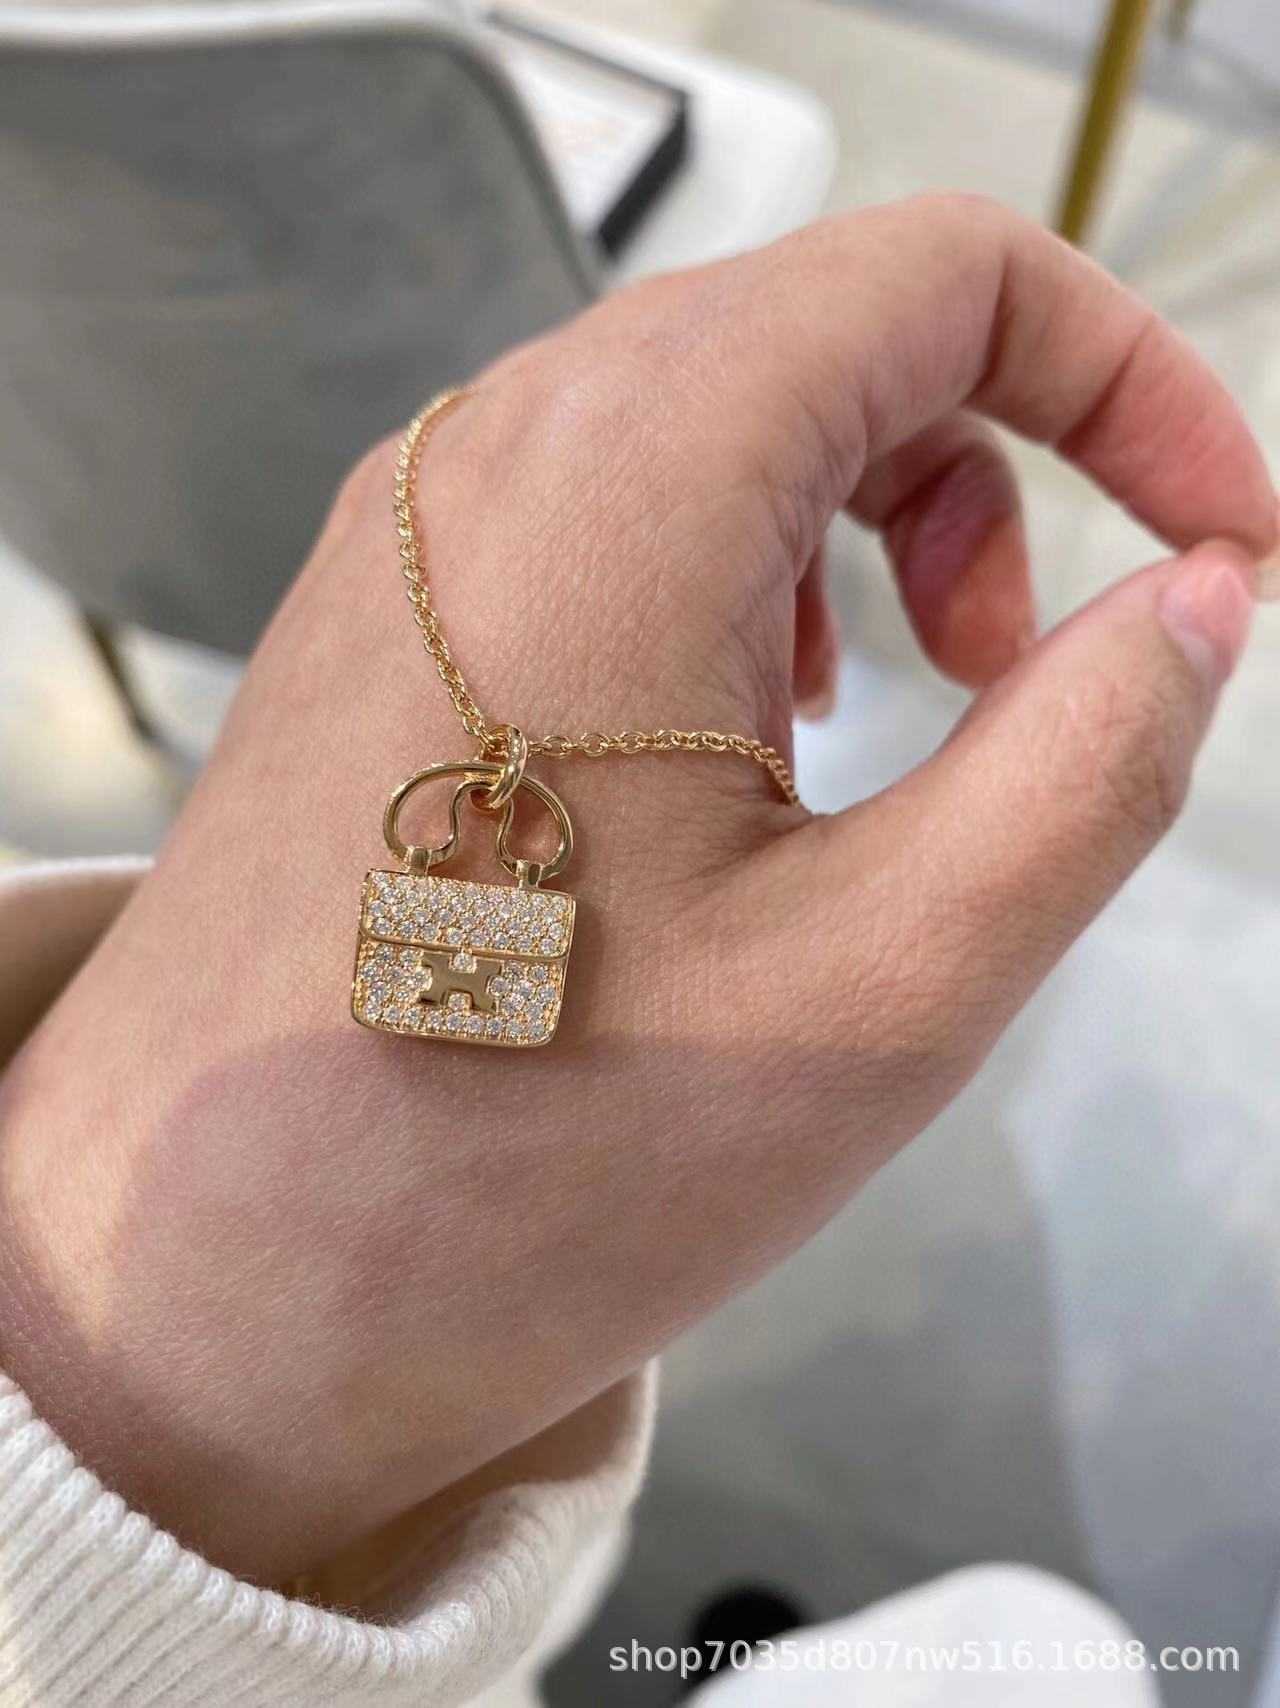 V-guld Ny Kangkang-väskhalsband för kvinnor med diamantpläterad 18k rosguld Enkelt och fashionabla internetkändis i benbenet